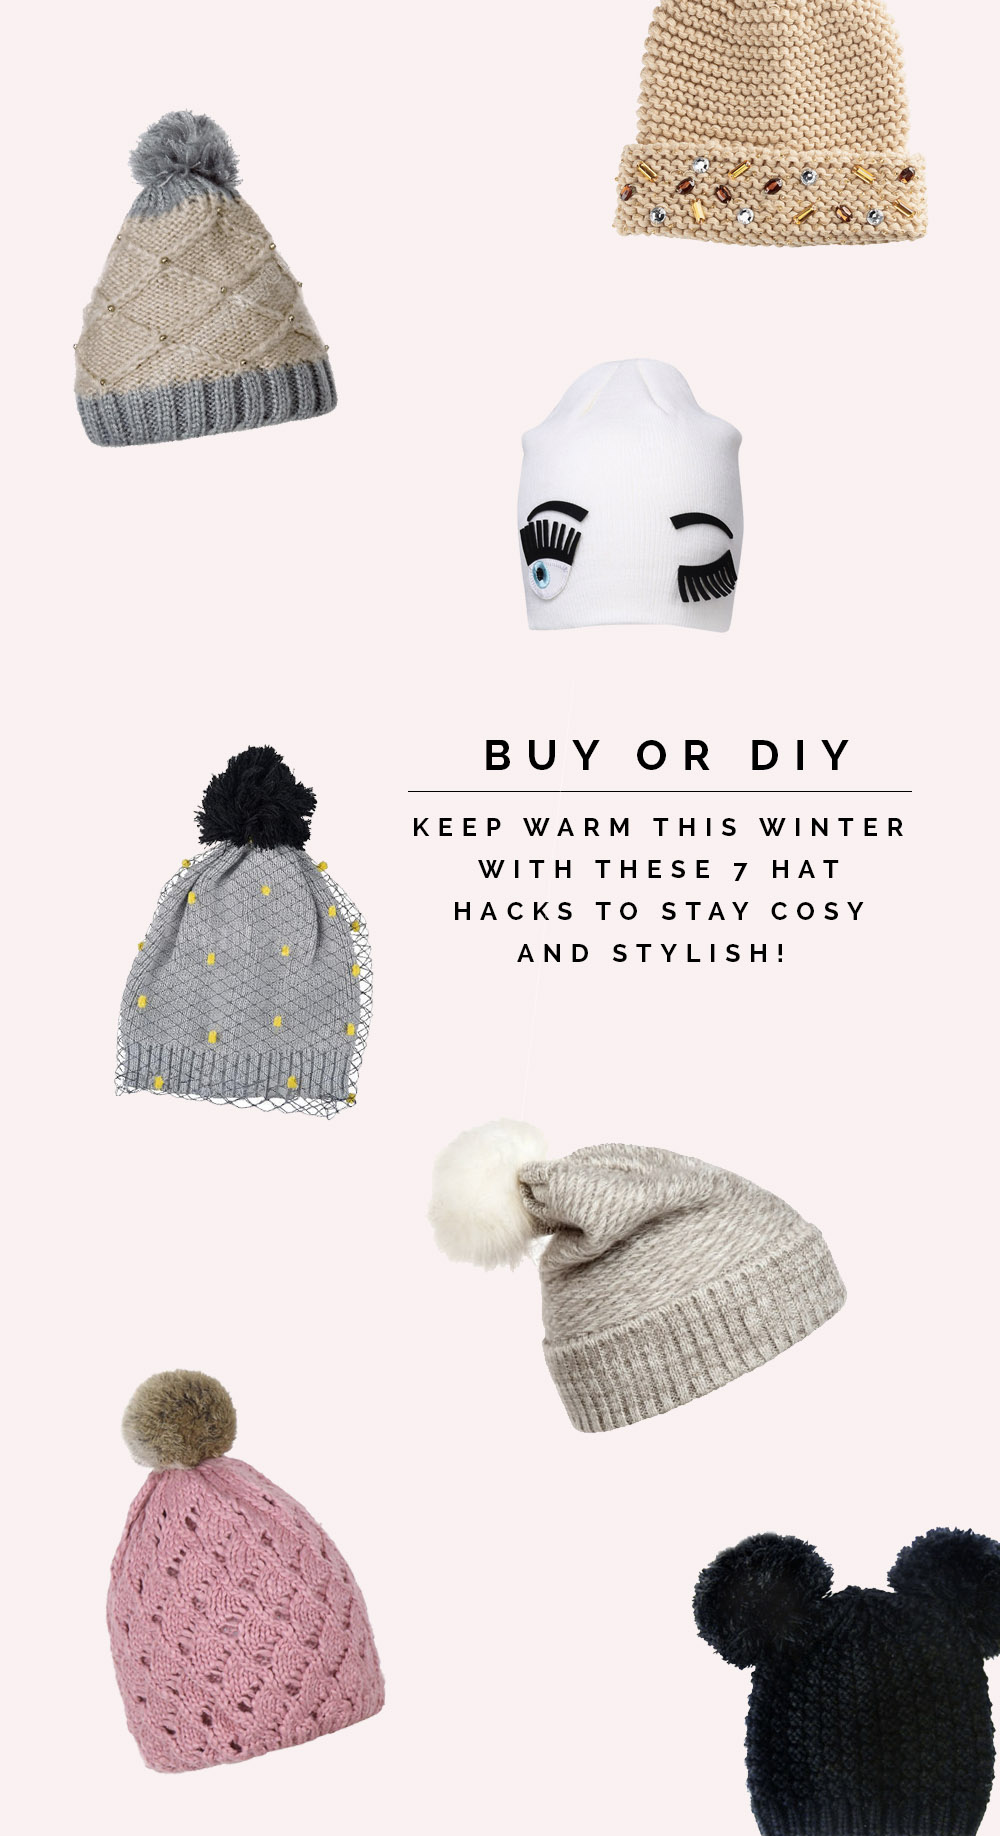 Buy or DIY 7 Stylish winter hat hacks